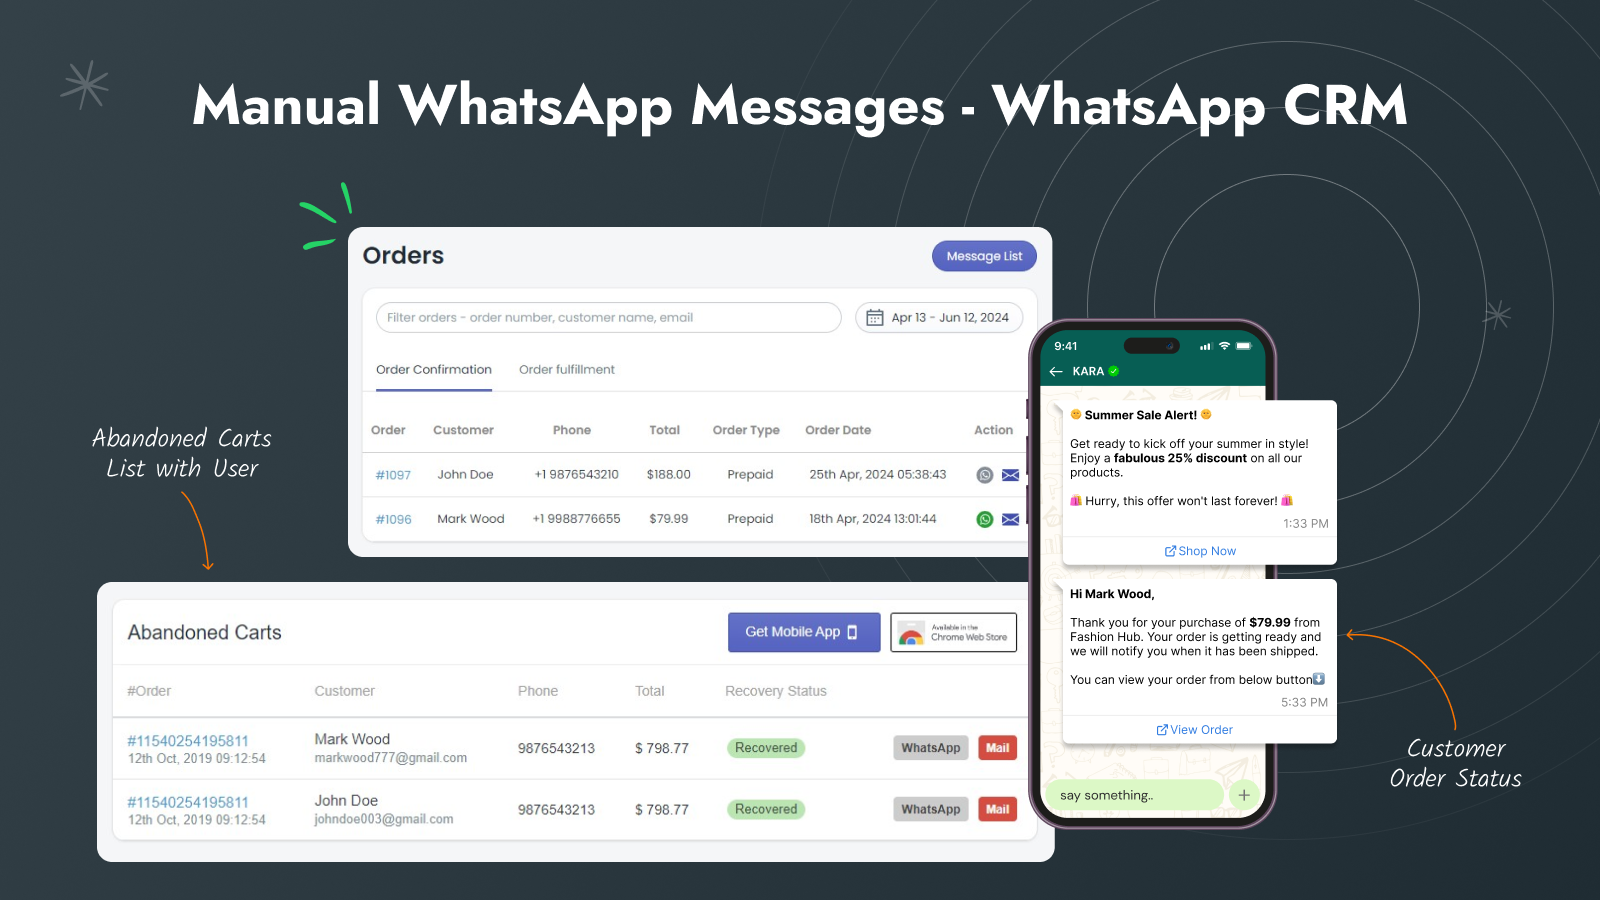 mensagens manuais do whatsapp para recuperação de checkouts abandonados e pedido